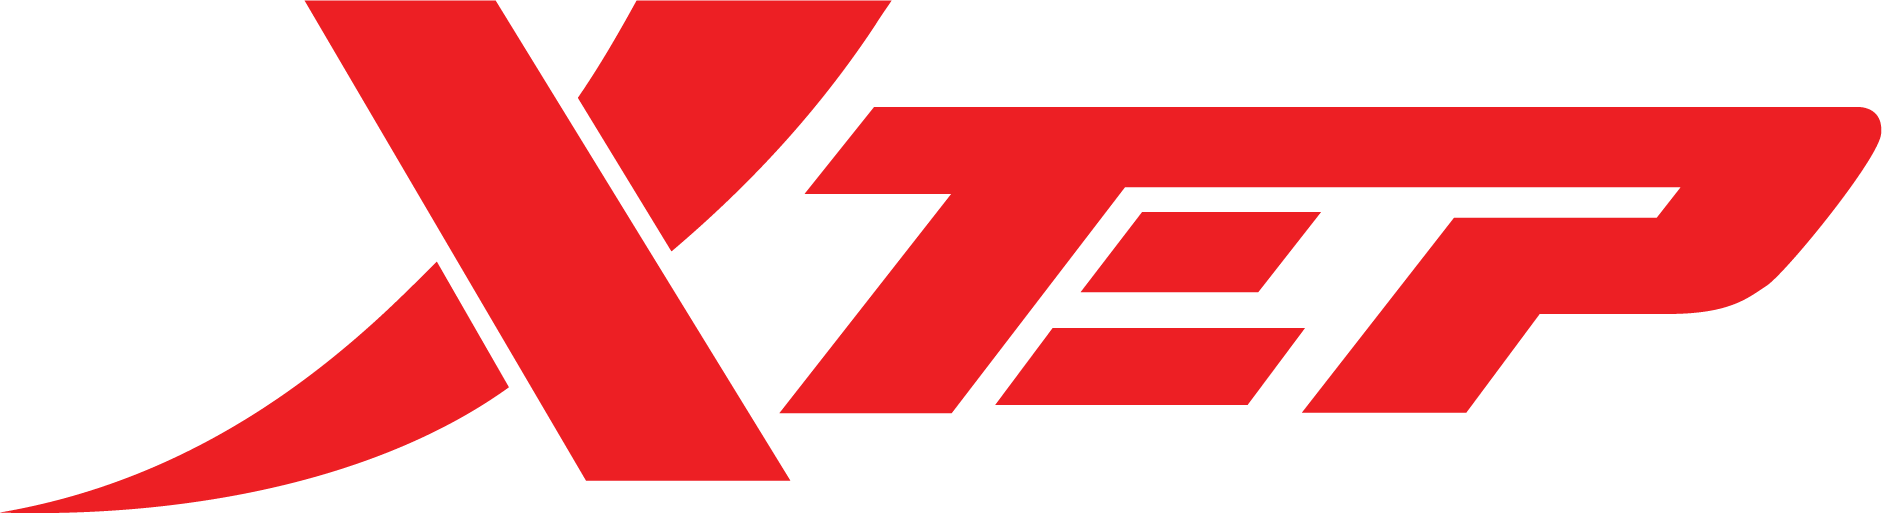 XTEP VIỆT NAM - Thương hiệu thời trang thể thao dẫn đầu